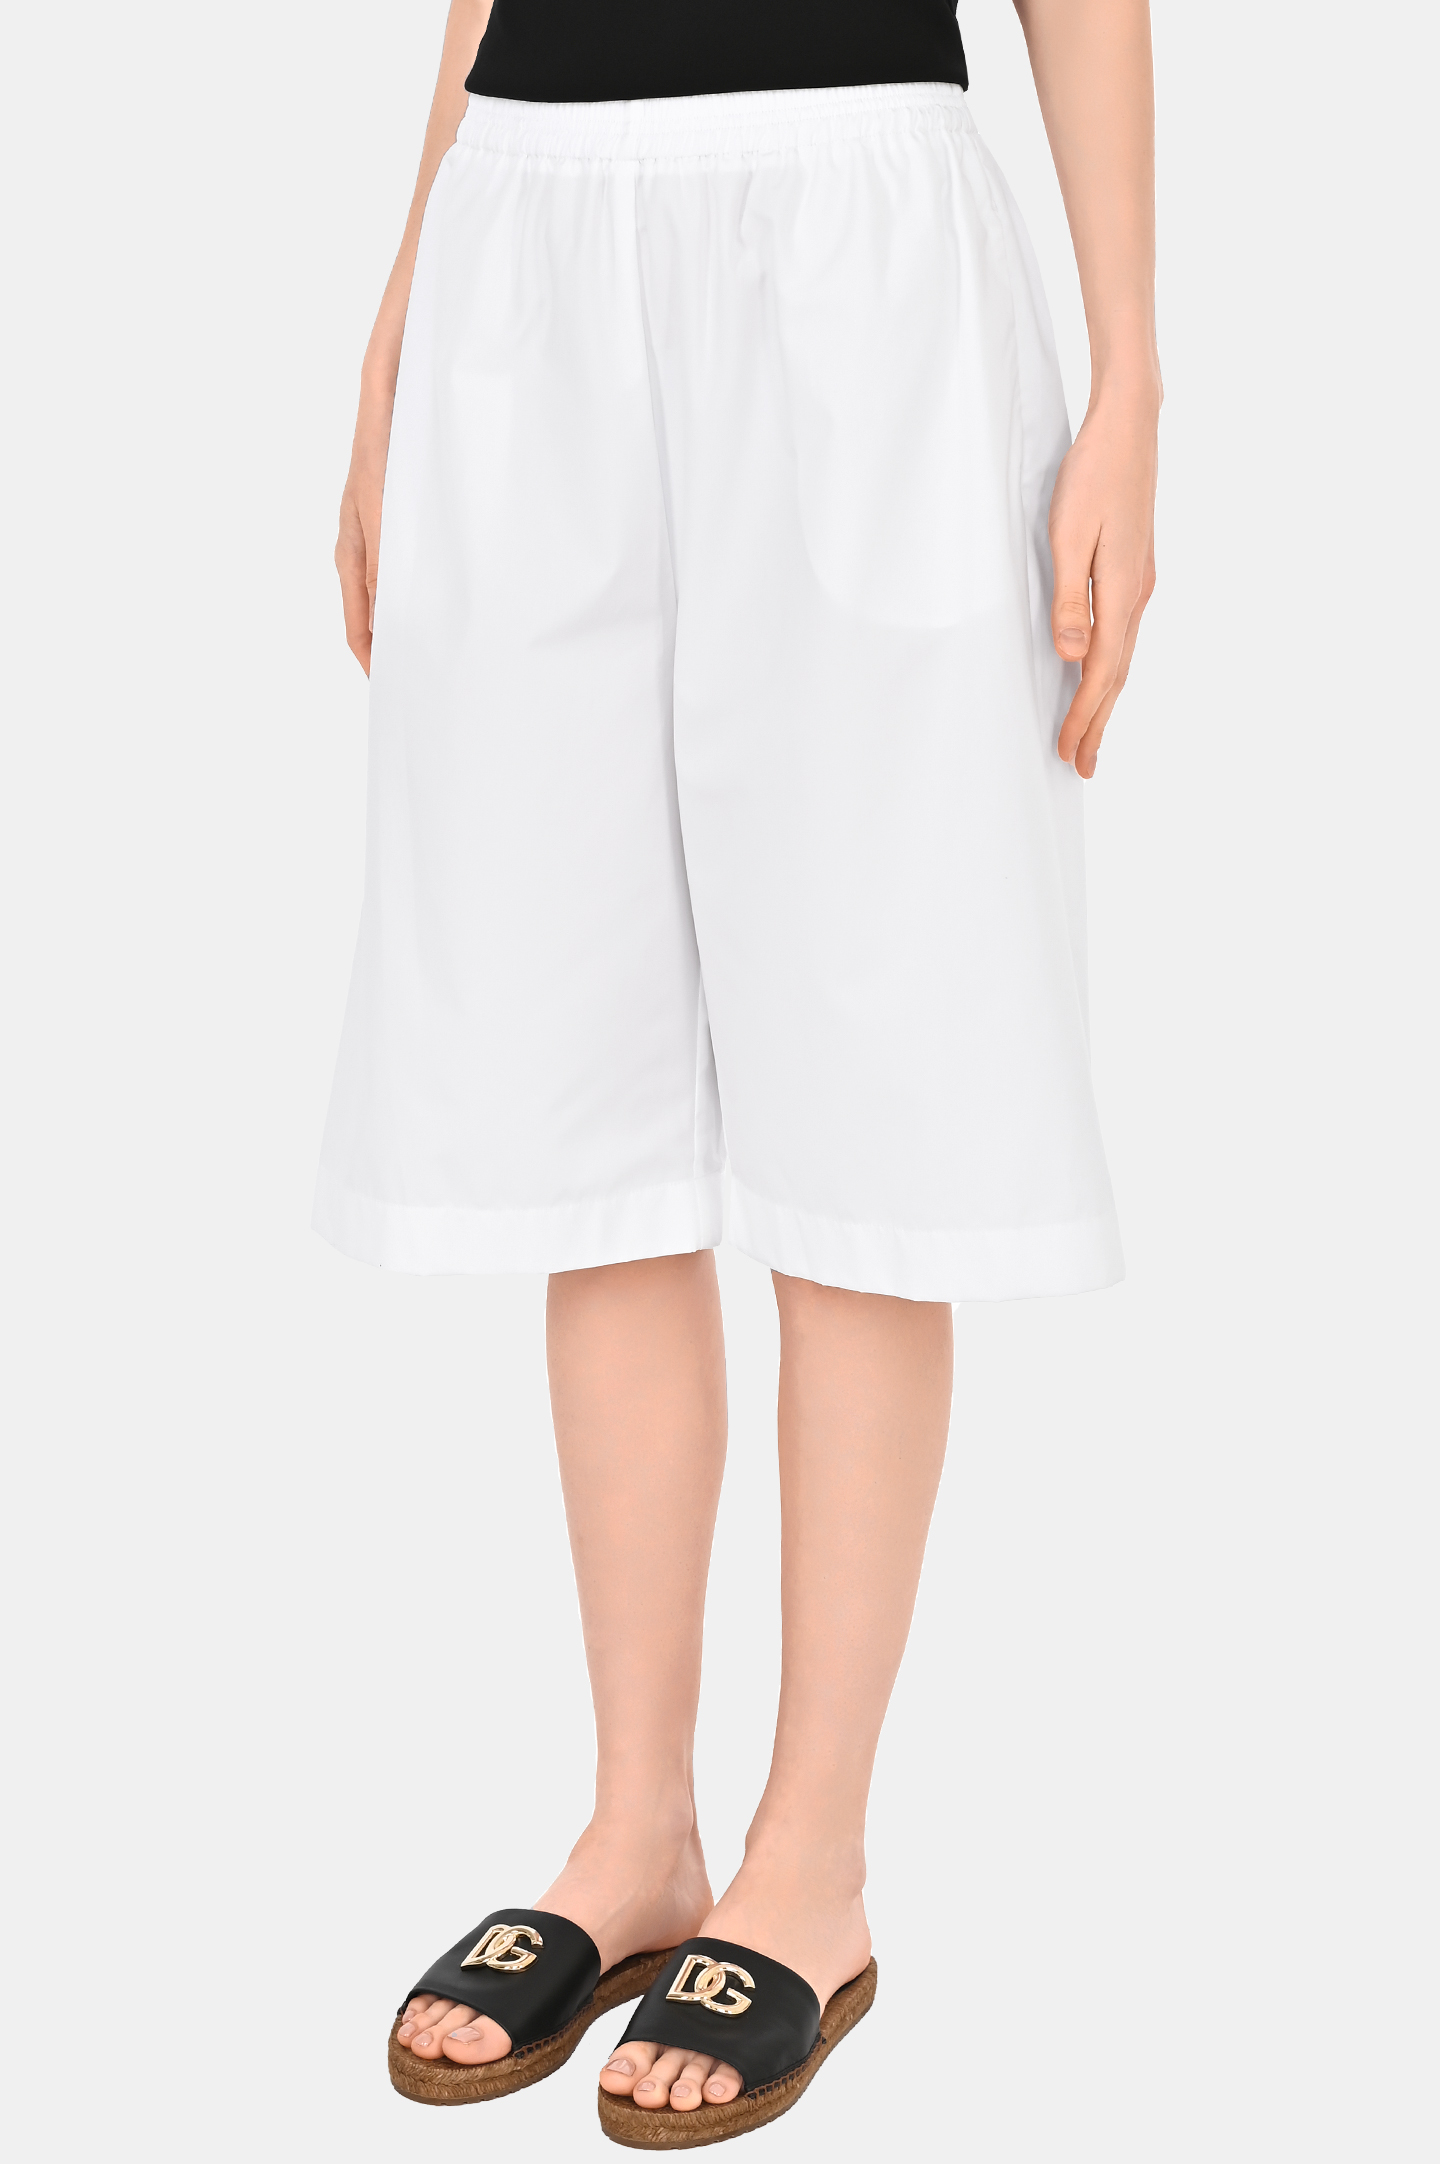 Хлопковые шорты-бермуды FABIANA FILIPPI PAD274F576D614, цвет: Белый, Женский